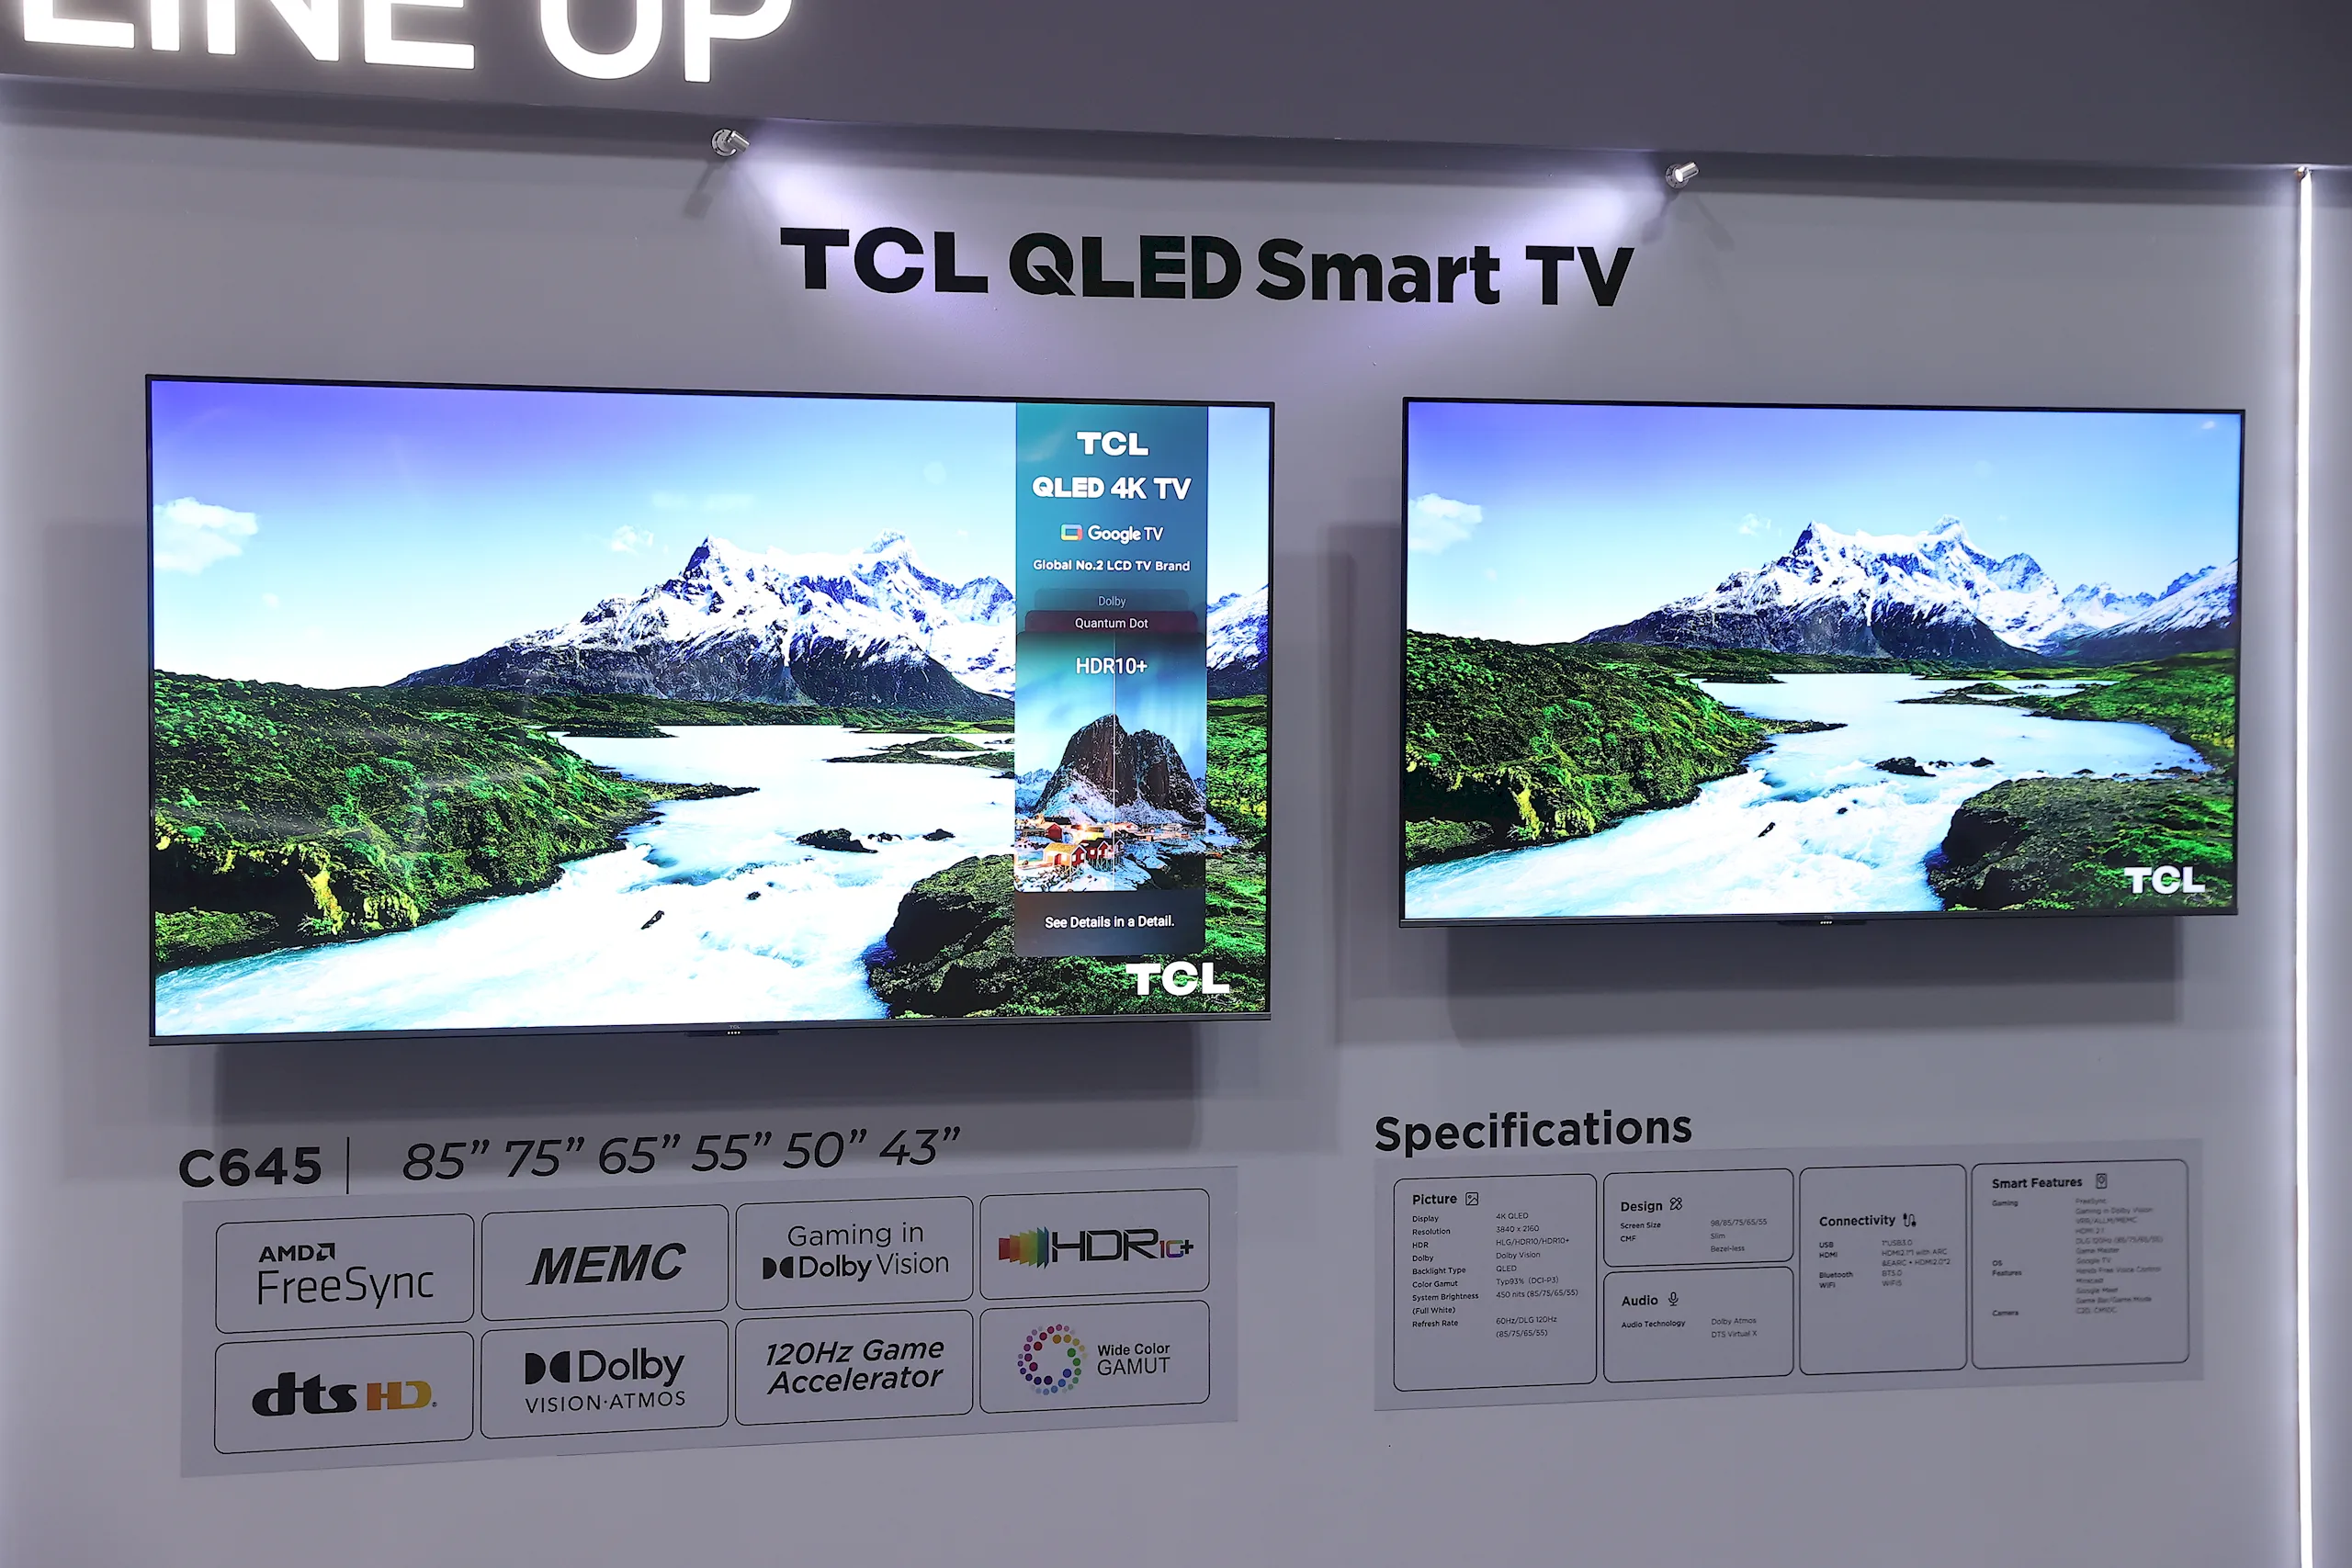 TCL ra mắt thế hệ Mini LED, QLED mới kết hợp loa thanh và thiết bị nhà thông minh